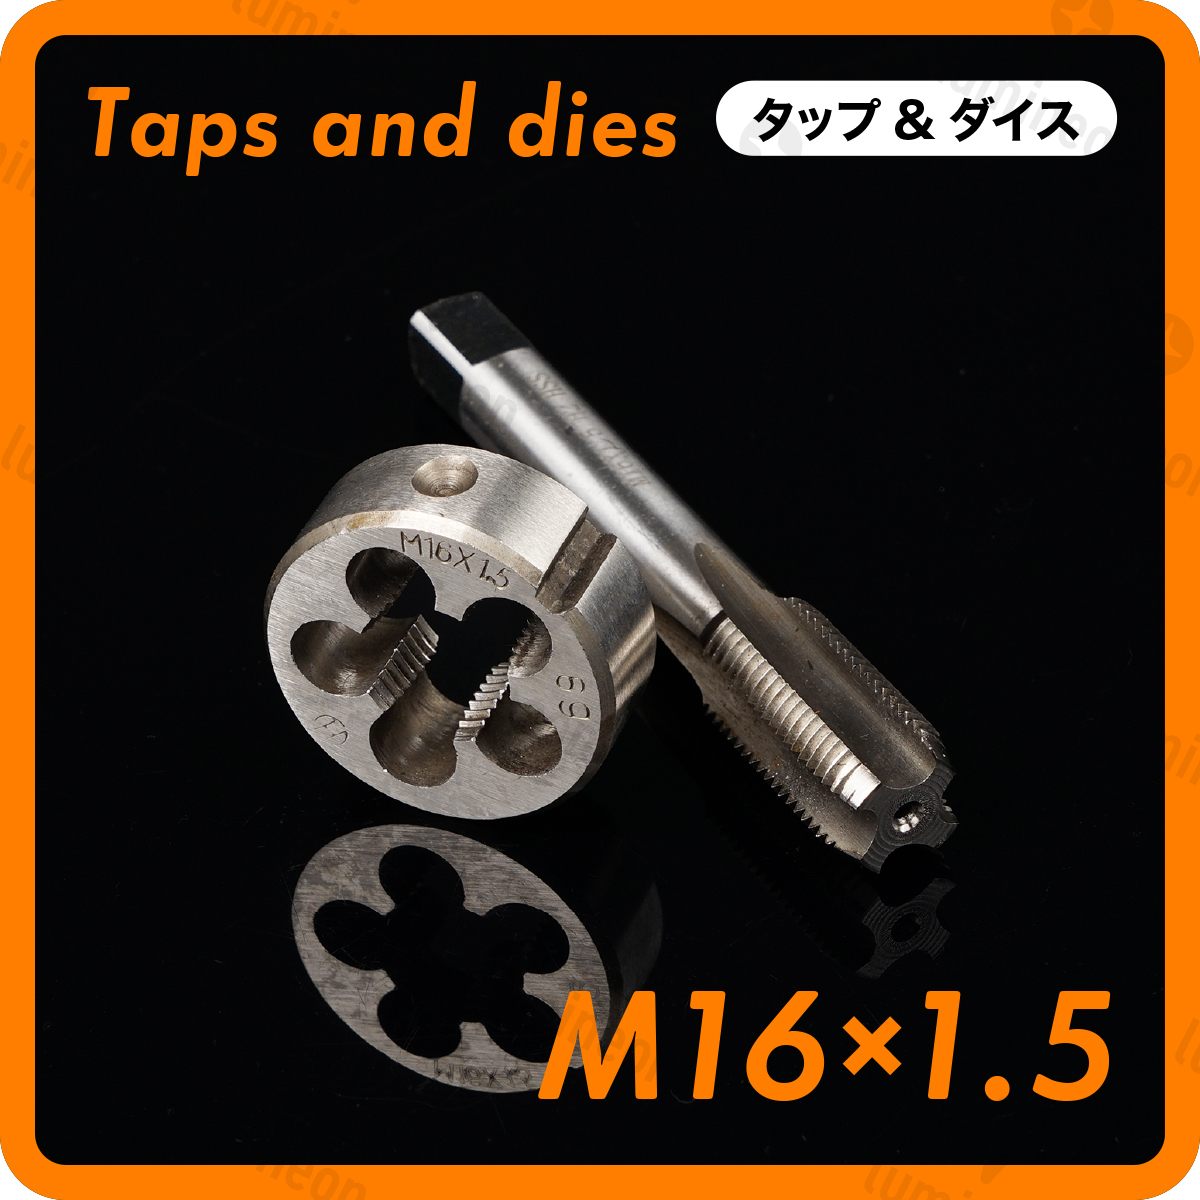 タップ 丸 ダイス M16×1.5 セット ツール 工具 セット ねじ 切り 機 ハンドル タップ DIY ネジ 切り 機 ネジ切機 手動 ねじきり g036g1 2